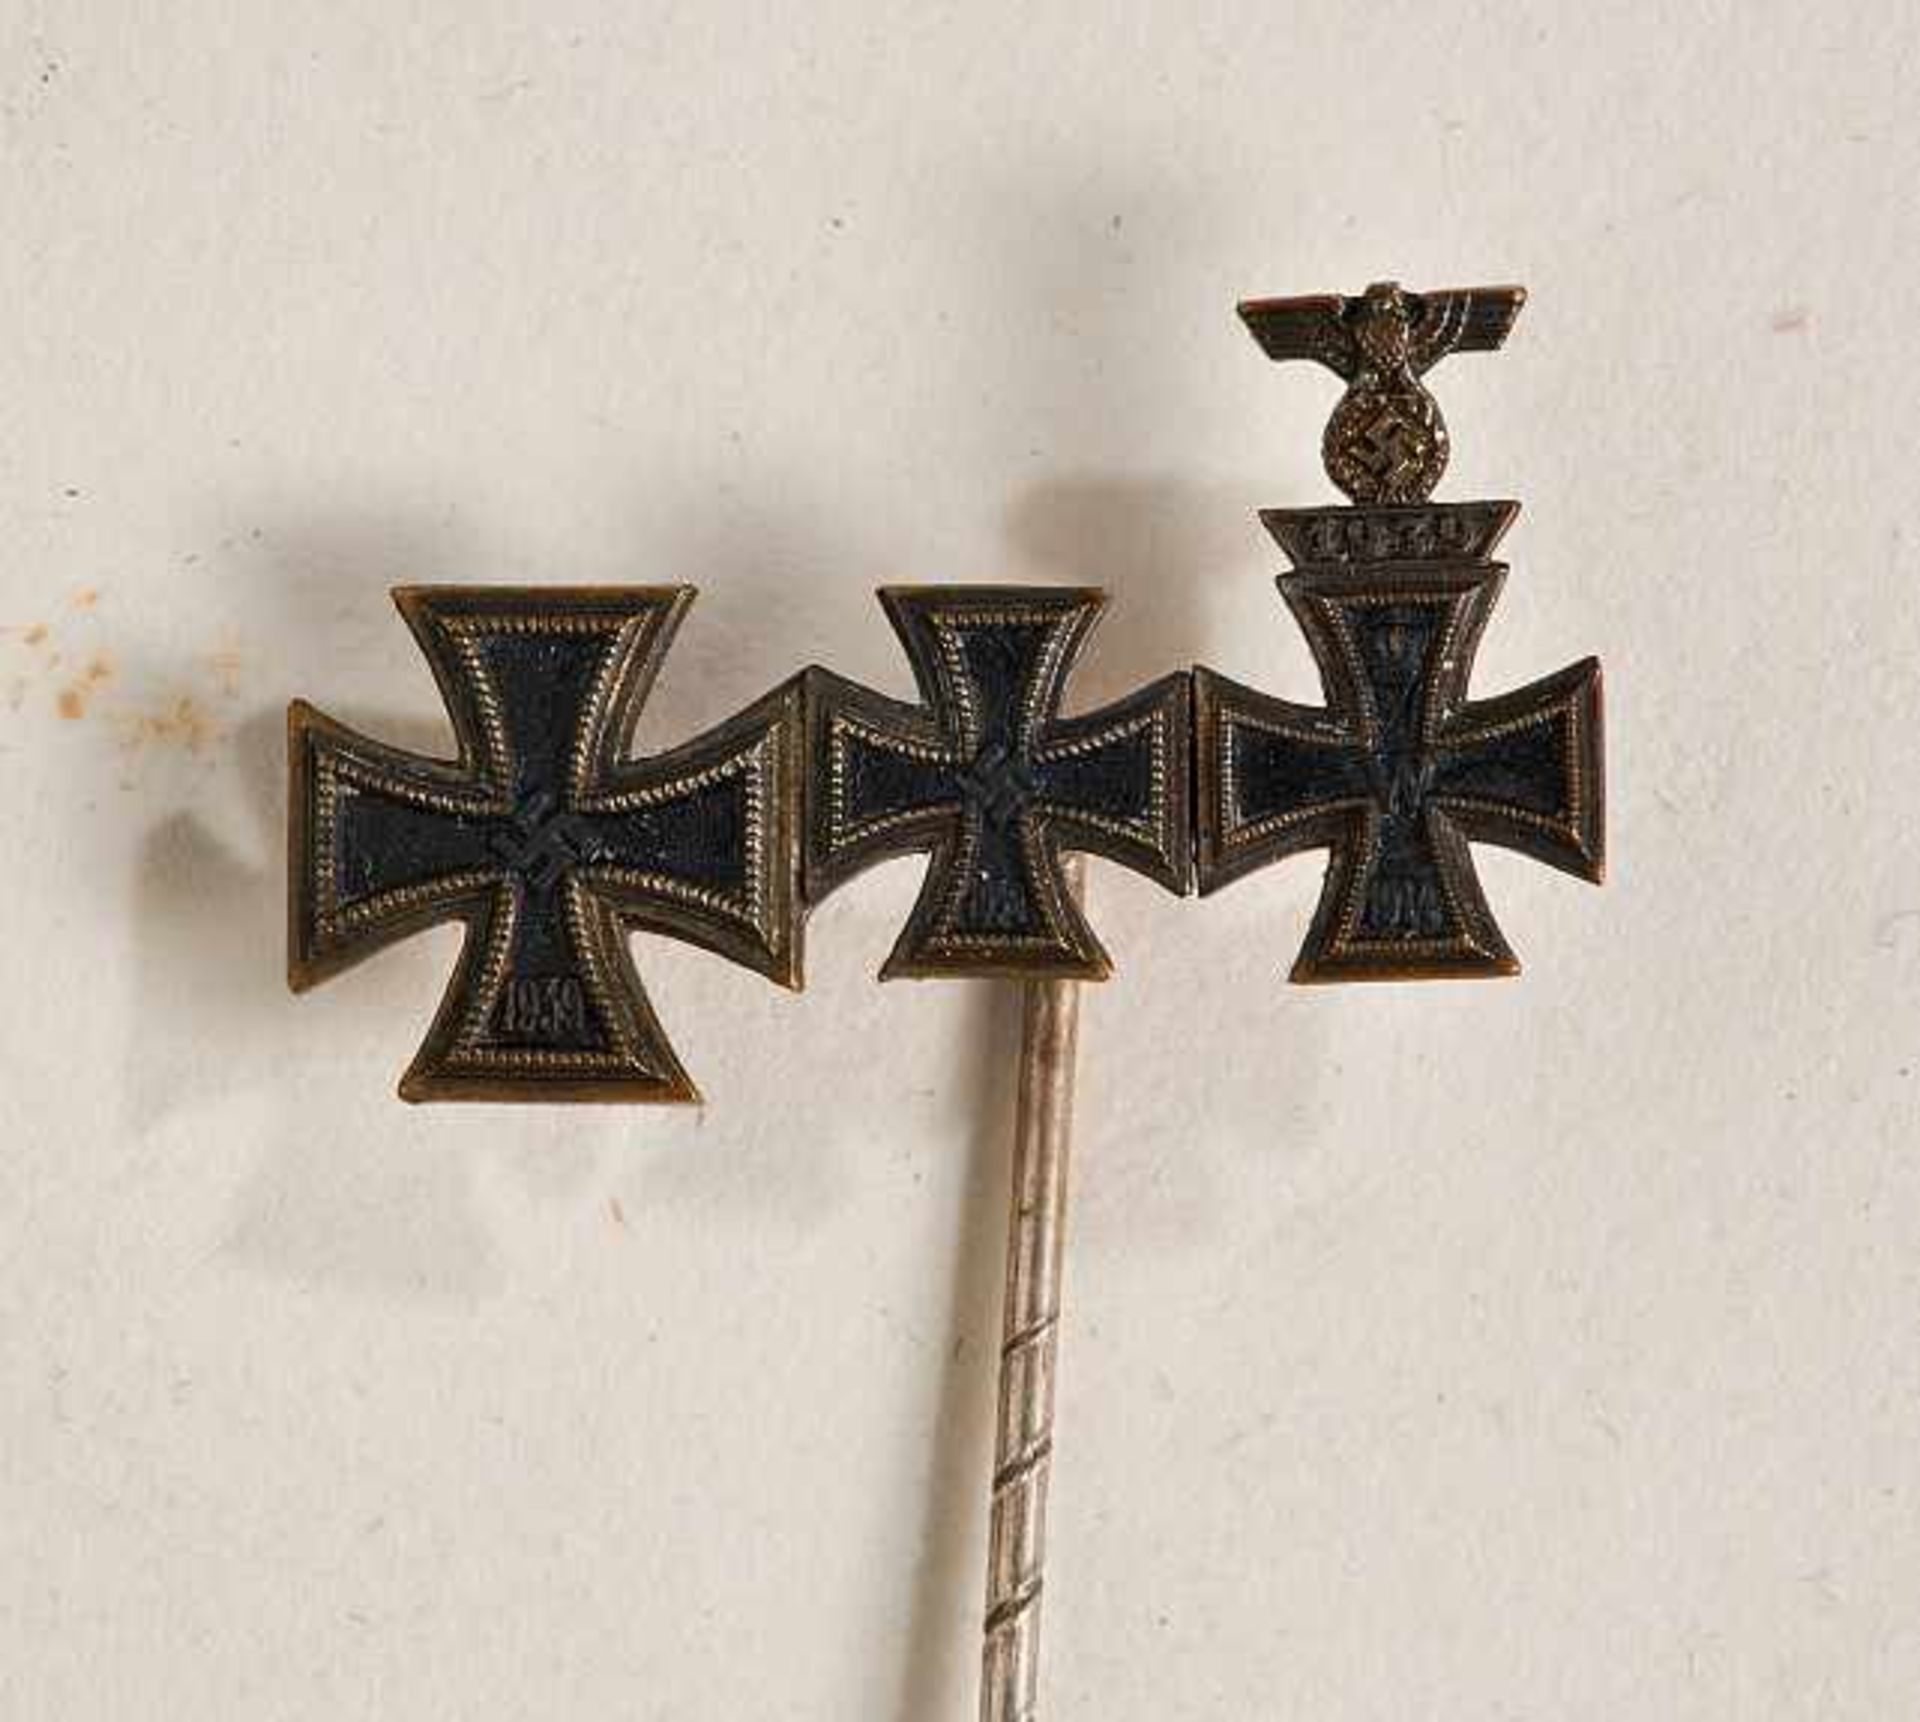 Deutsches Reich 1933 - 1945 - General Awards - Ritterkreuz : Knight's Cross Stick Pin.Stick pin